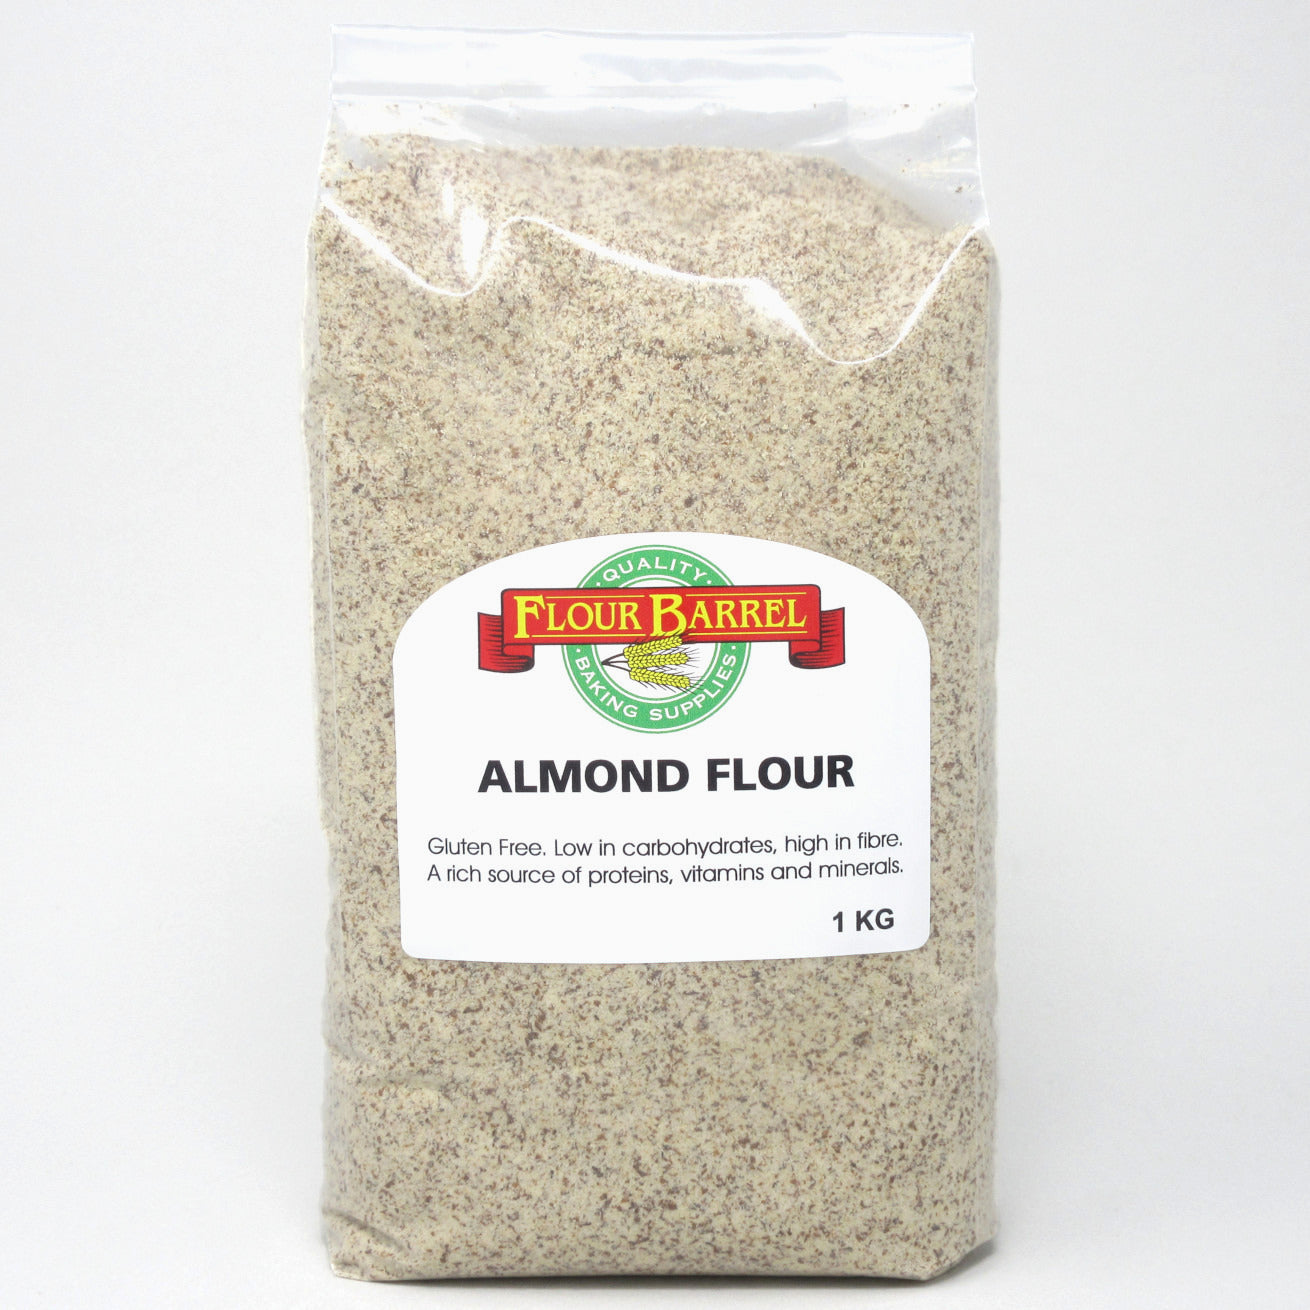 Flour Barrel product image - Natural Almond Flour